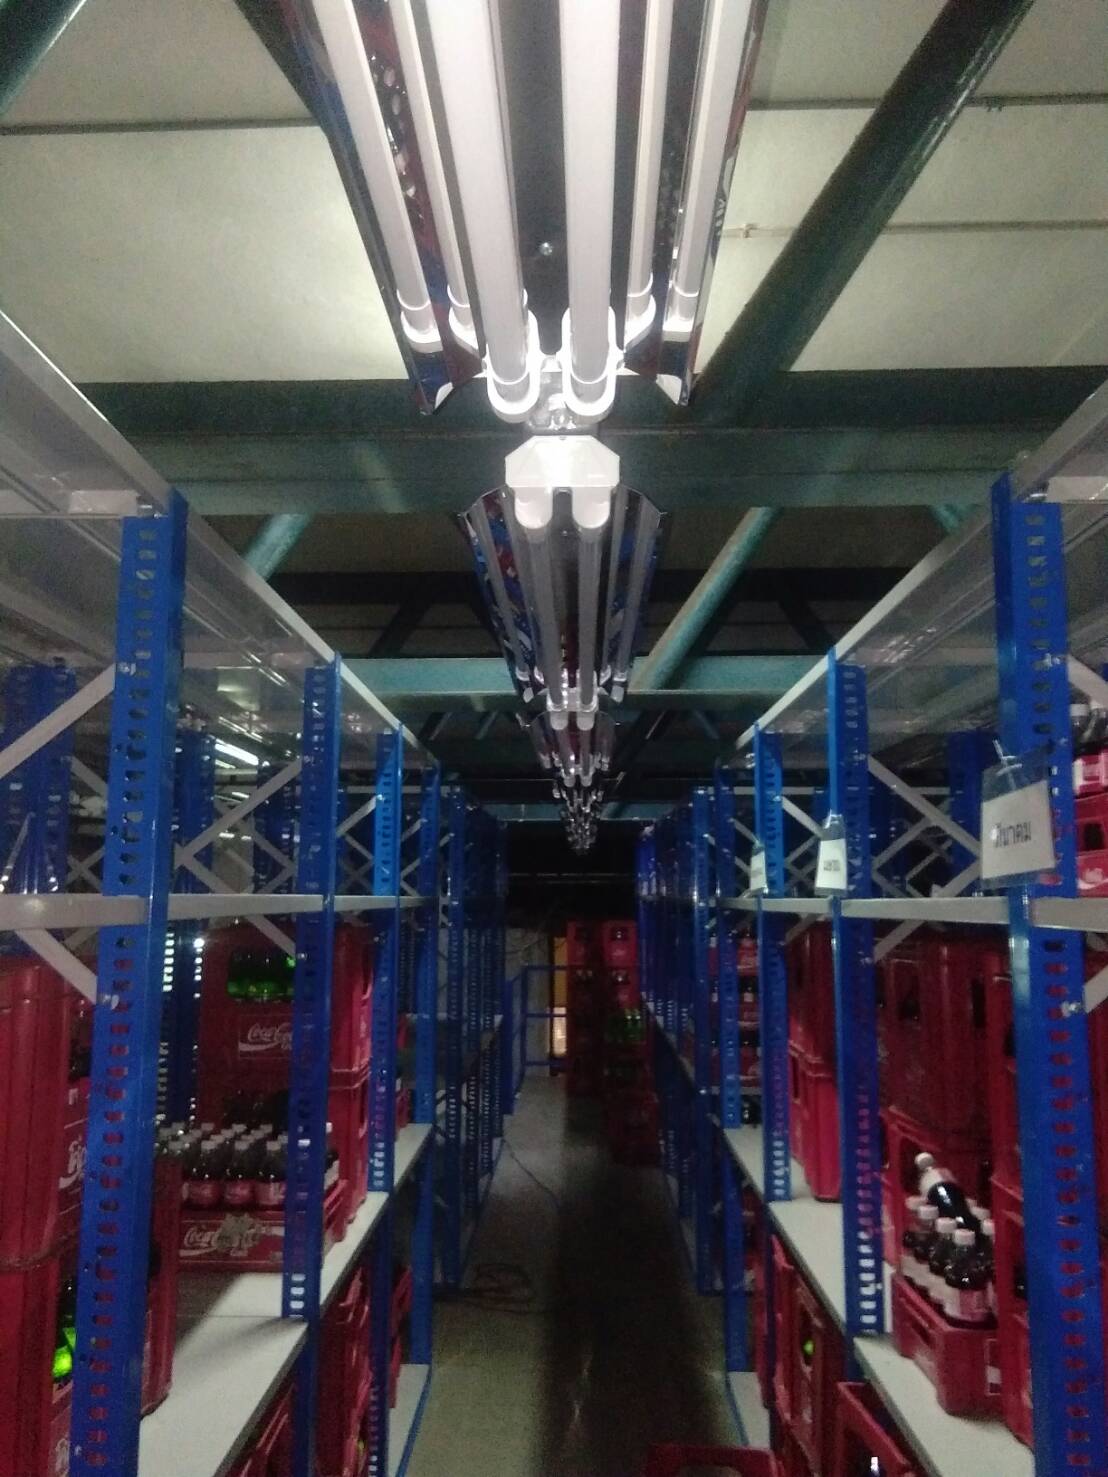 ผลงานการติดตั้งหลอดไฟ LED T8 (LED TUBE T8)@บริษัทผลิตเครื่องดื่มน้ำอัดลม